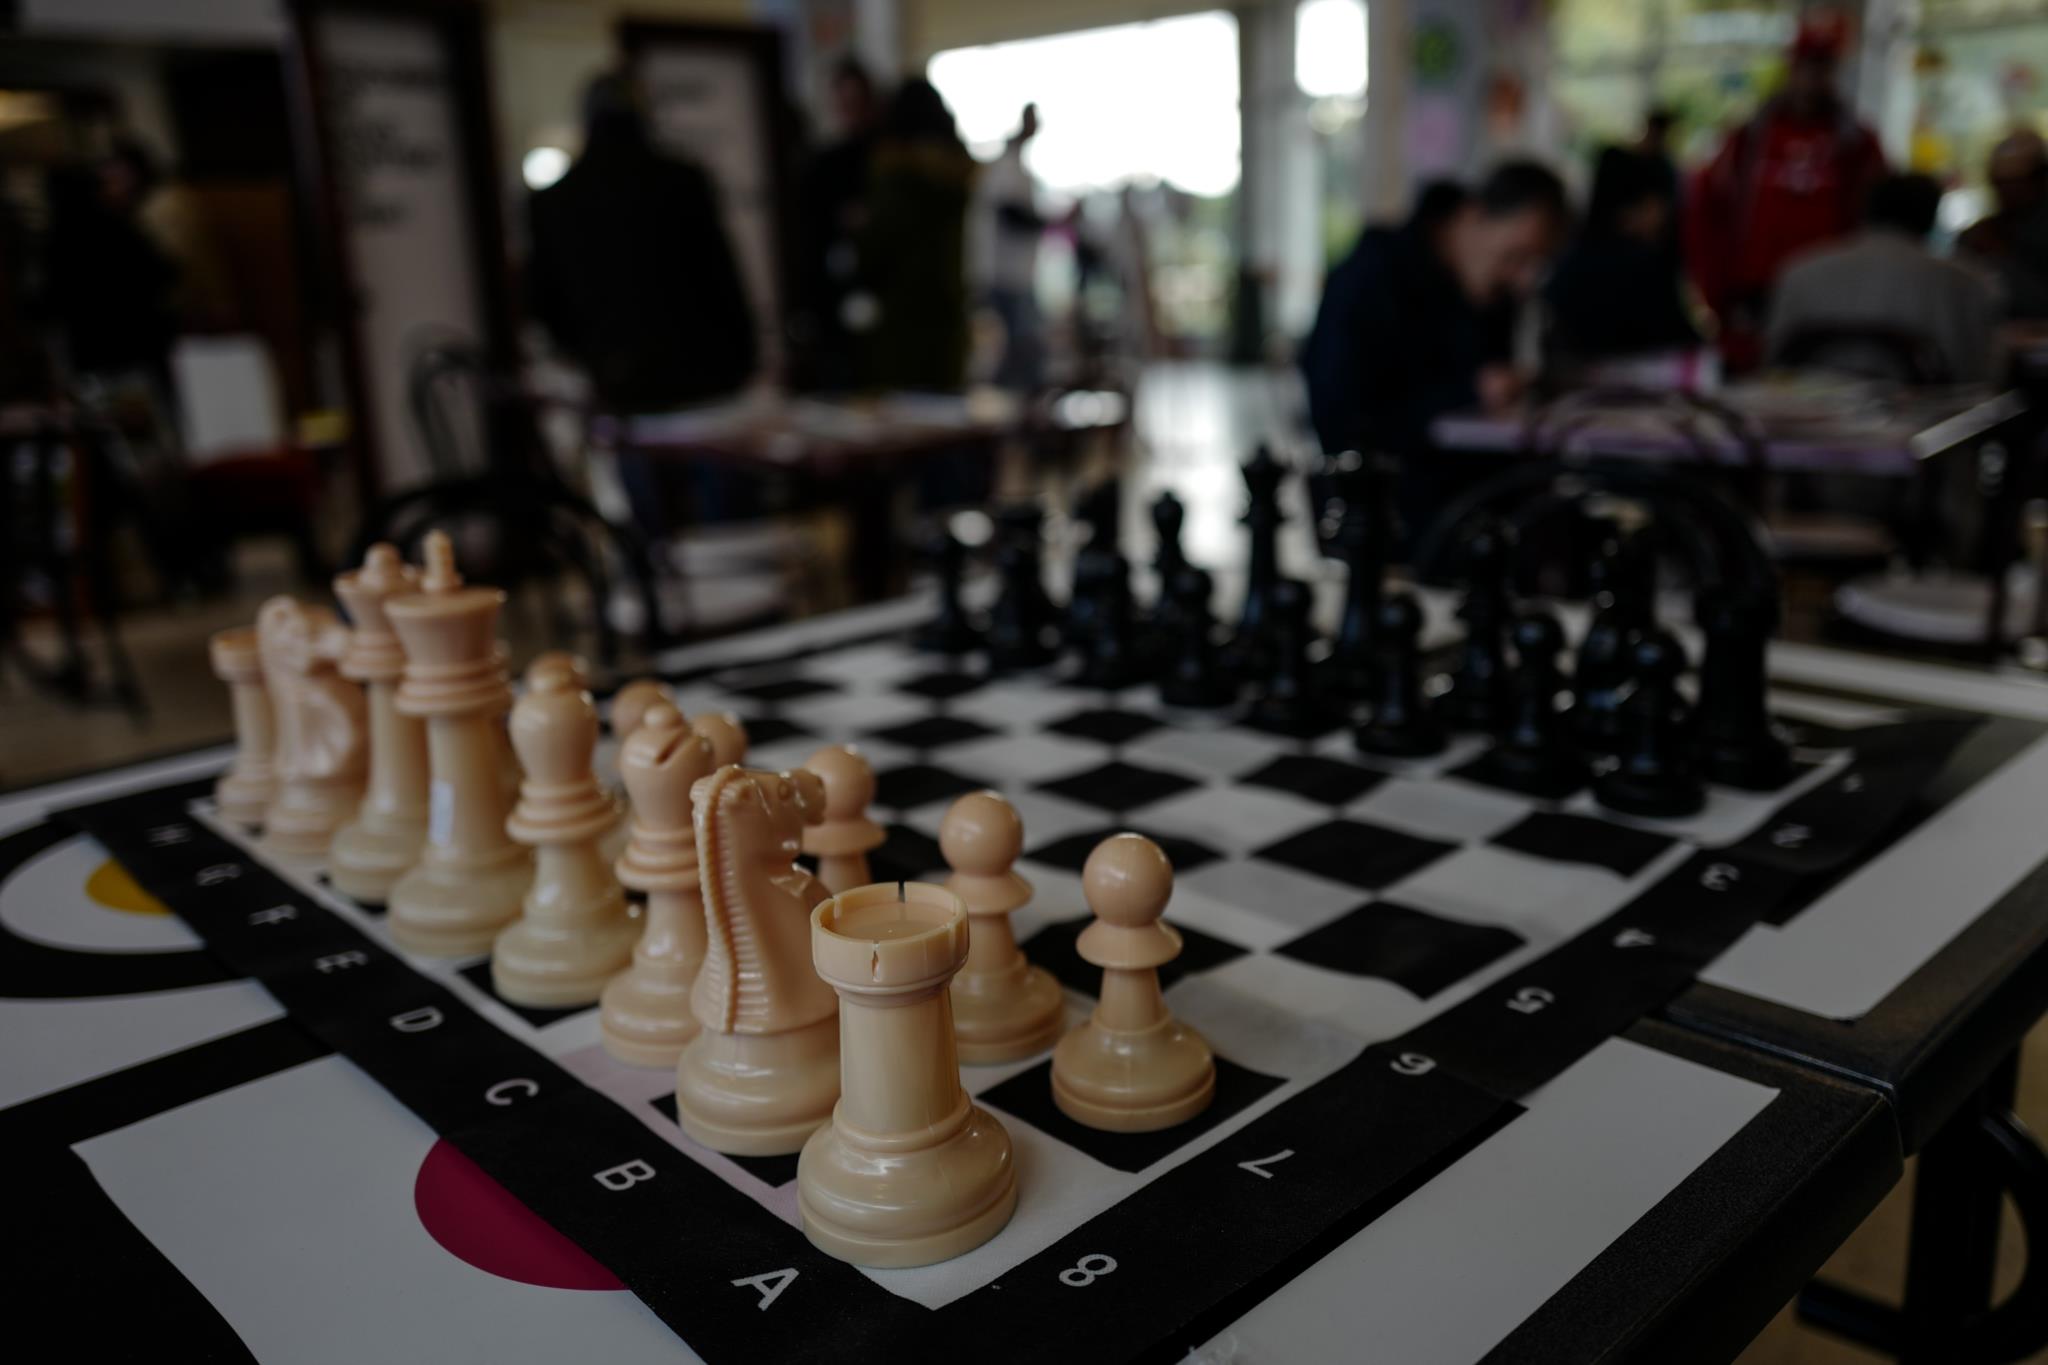 China é a nova campeã nas Olimpíadas de xadrez, Outras Modalidades